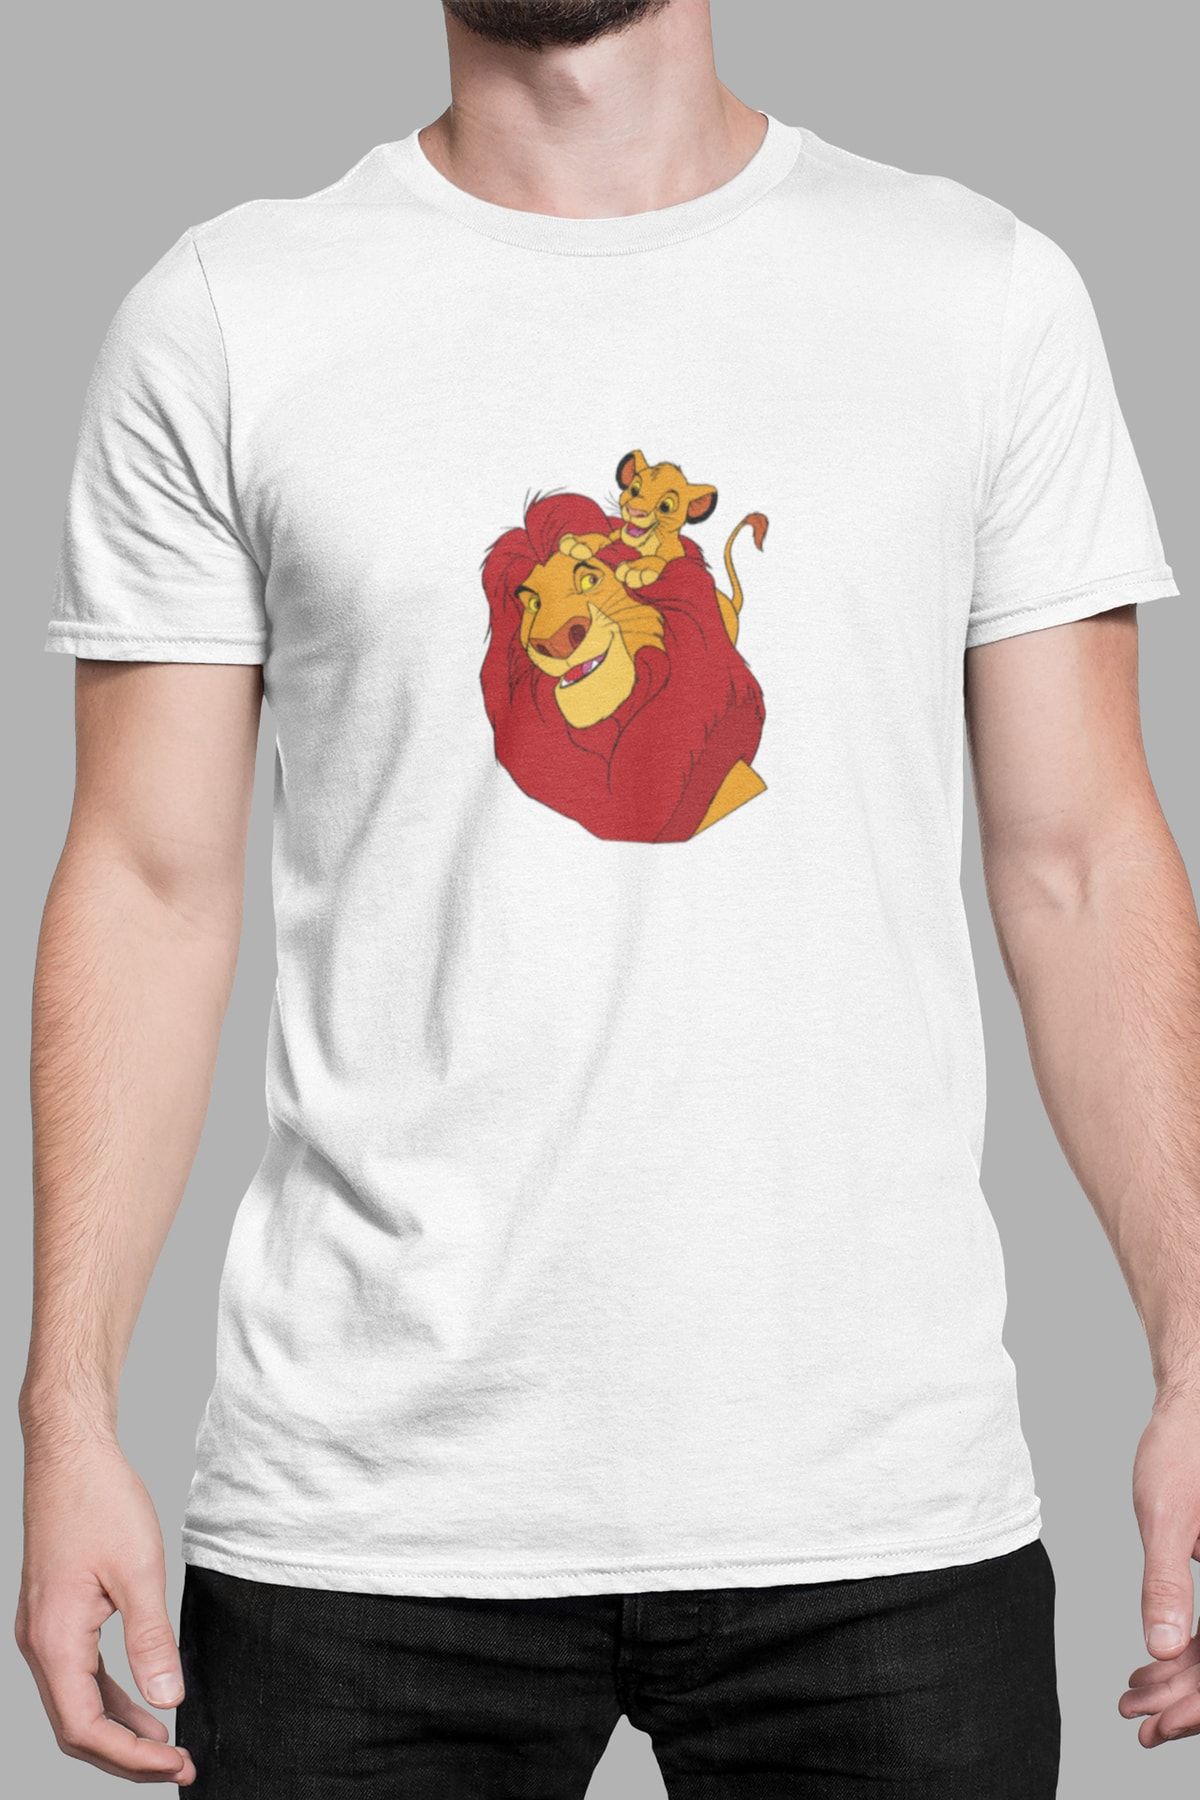 Kio Tasarım Aslan Kral Baskılı Erkek Tişört Sevgiliye Arkadaşa Hediye Doğum Günü Hediyesi Pamuklu T-shirt